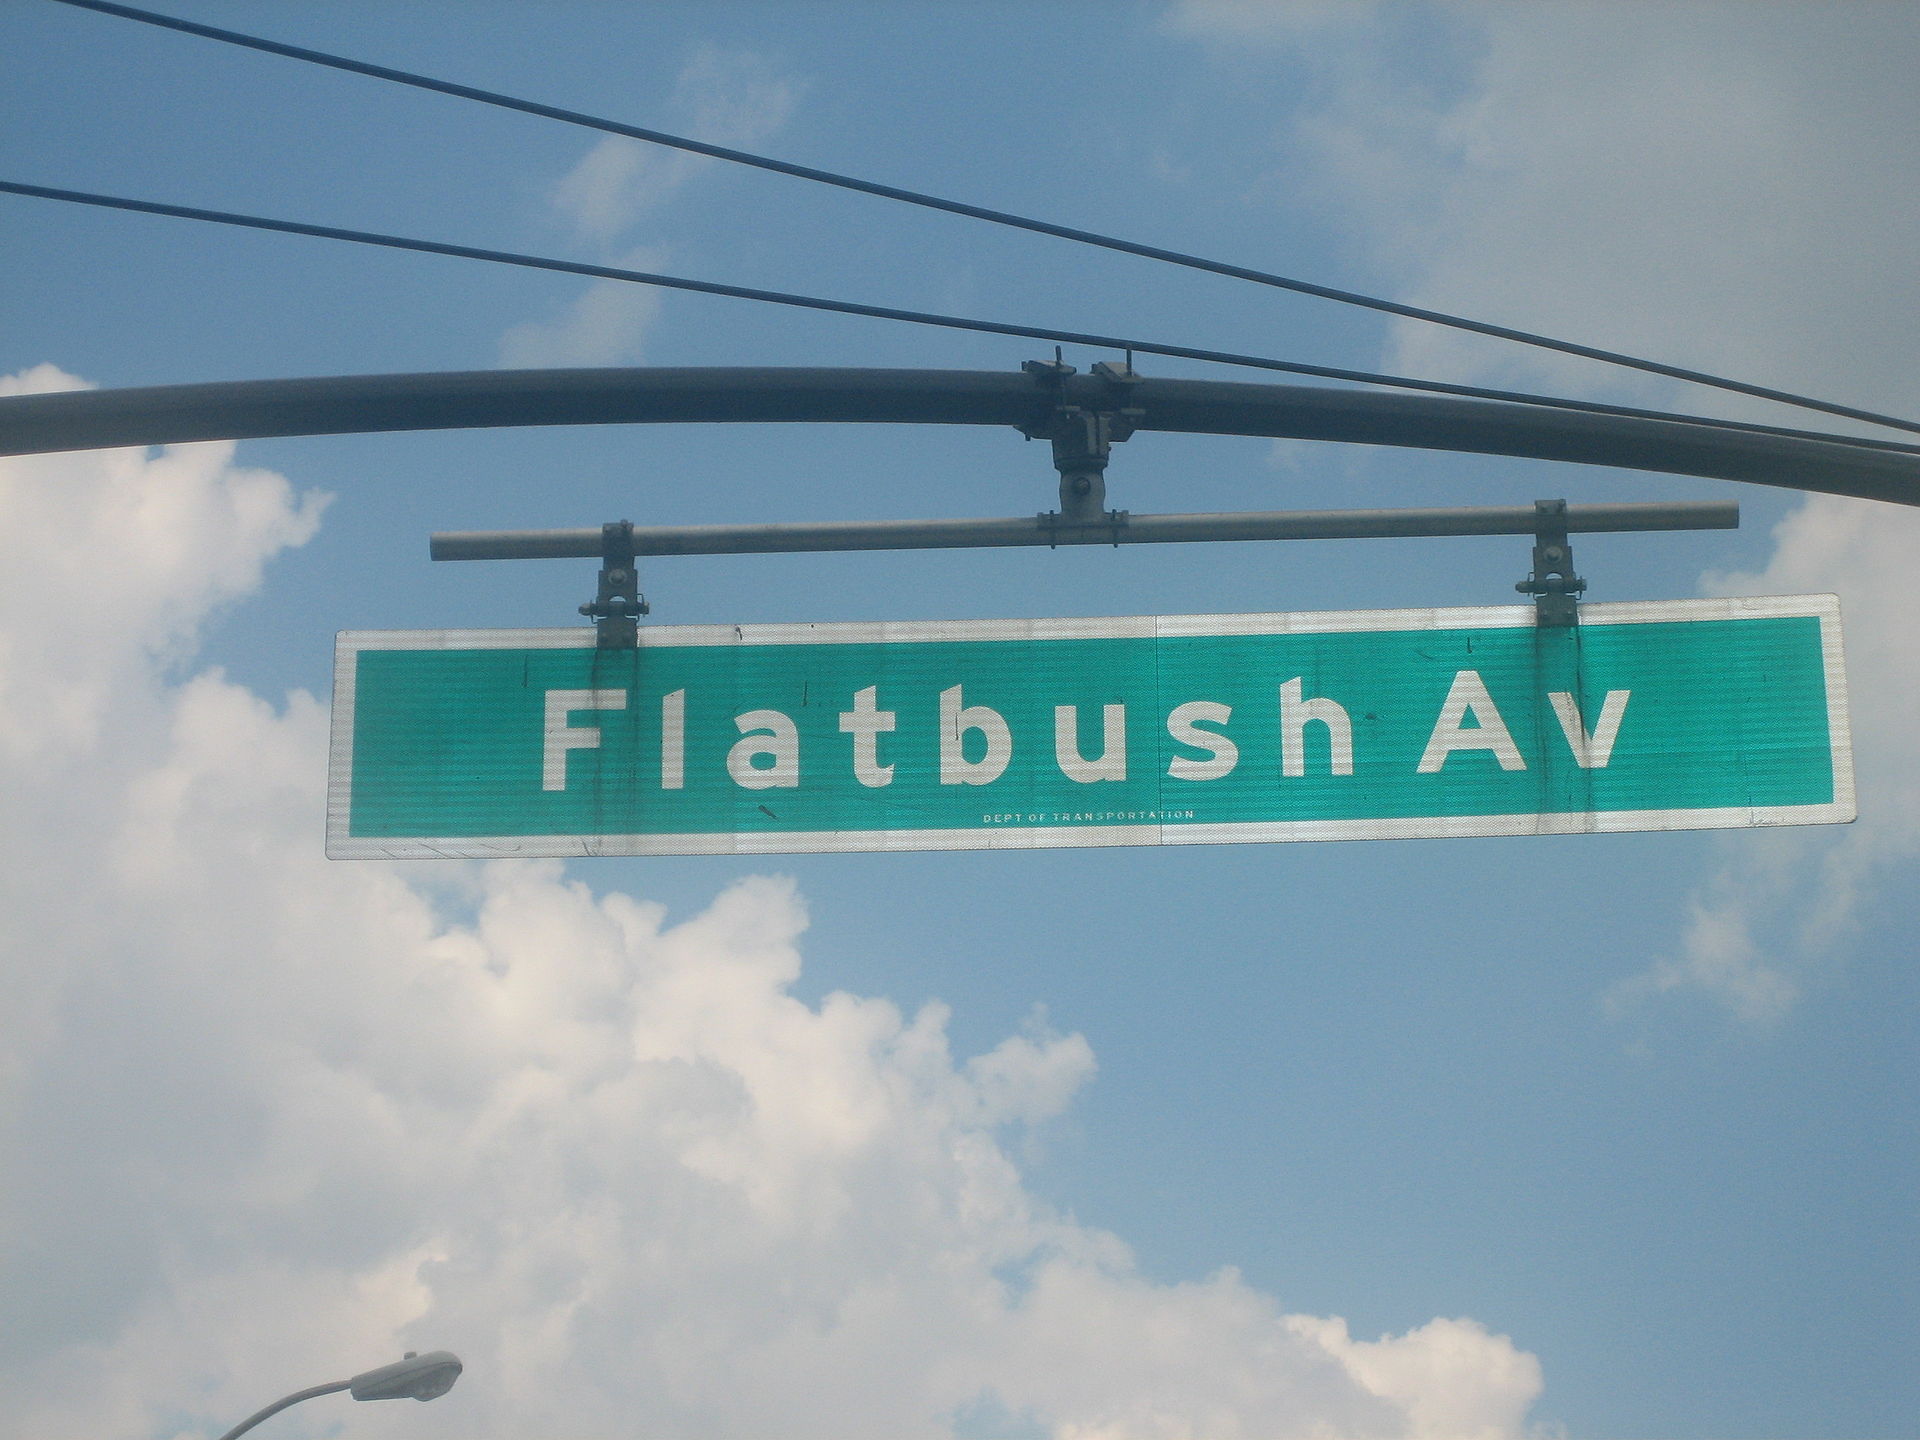 Flatbush Avenue - Wikipedia